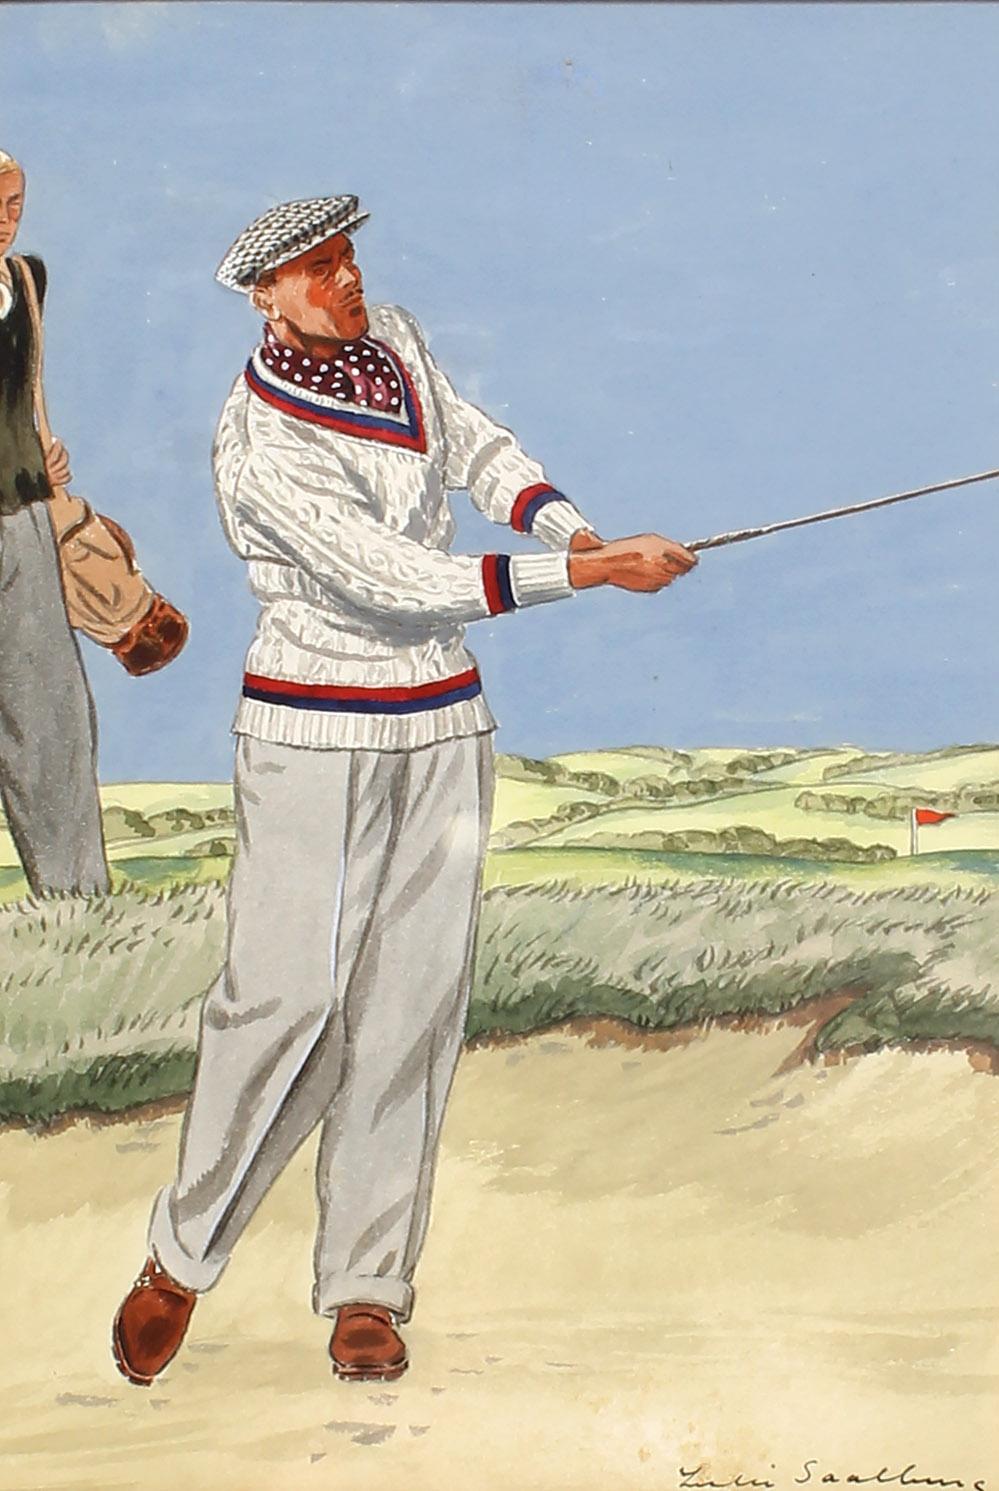 Antike Illustration eines Golfers von gelistetem Illustrator für Vanity Fair – Painting von Leslie Saalburg